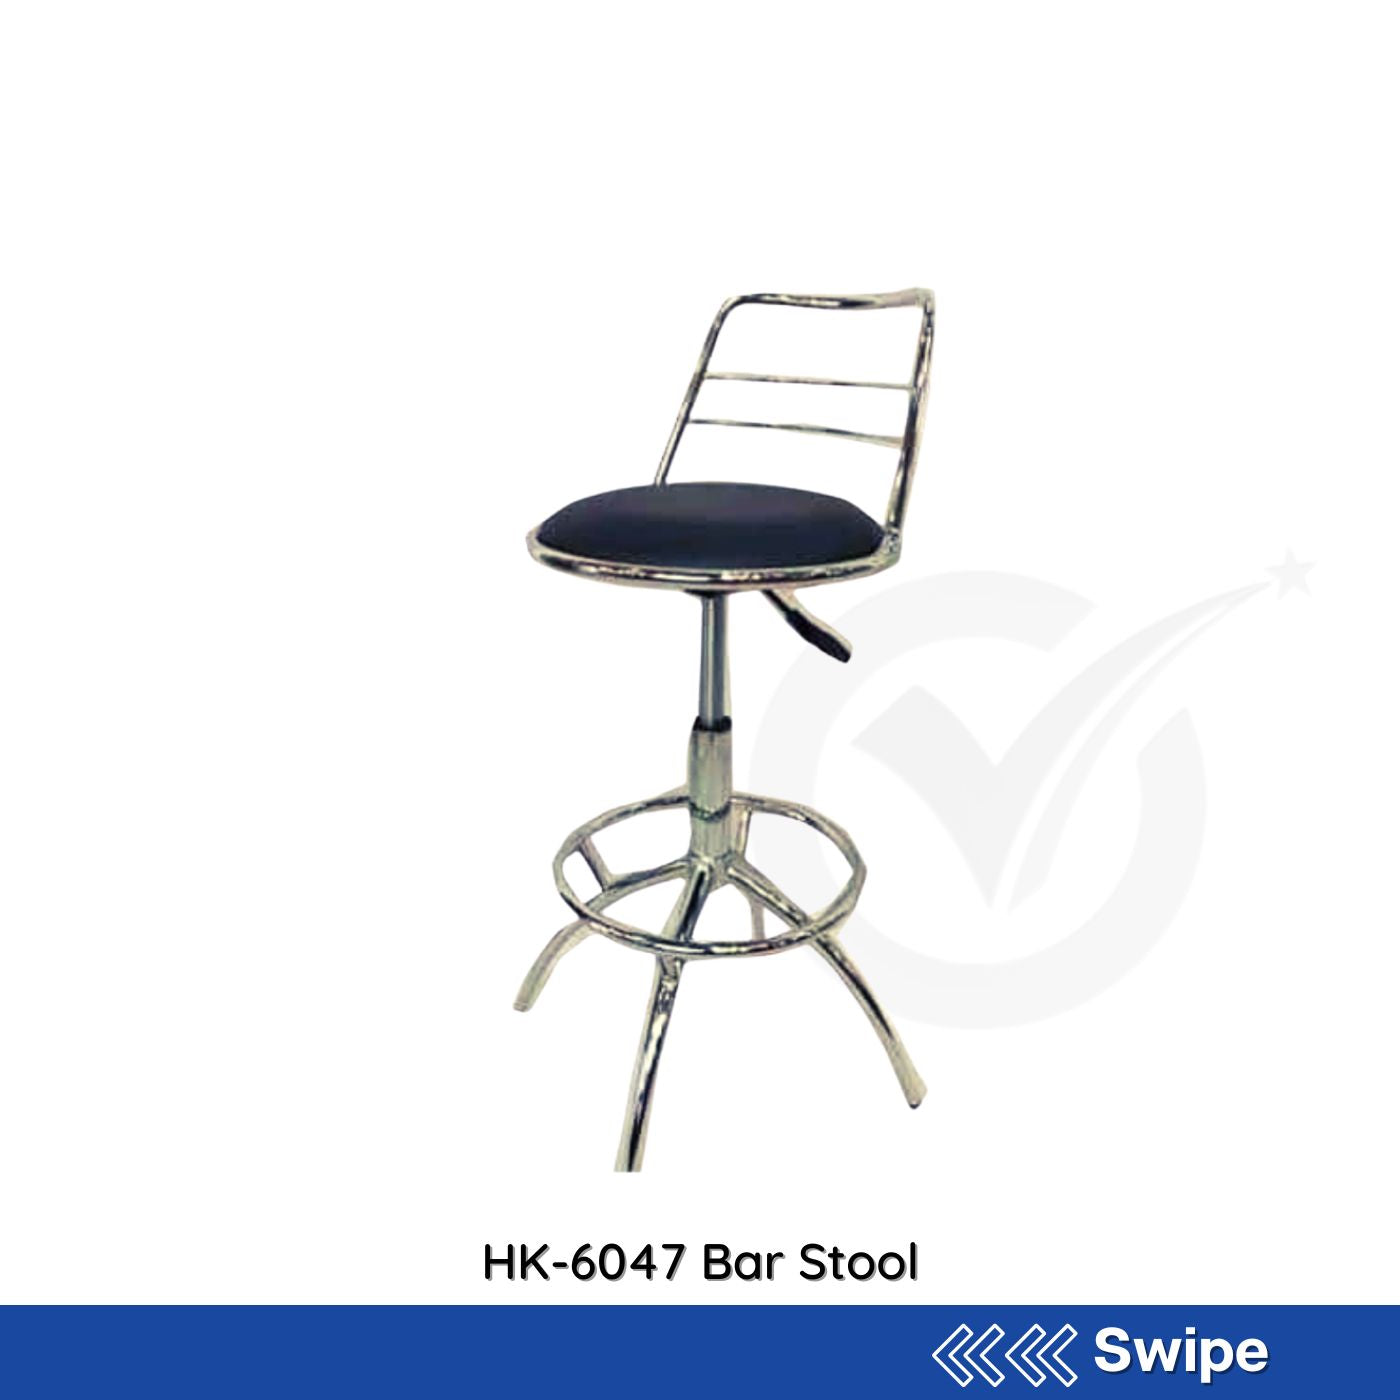 HK-6047 Bar Stool